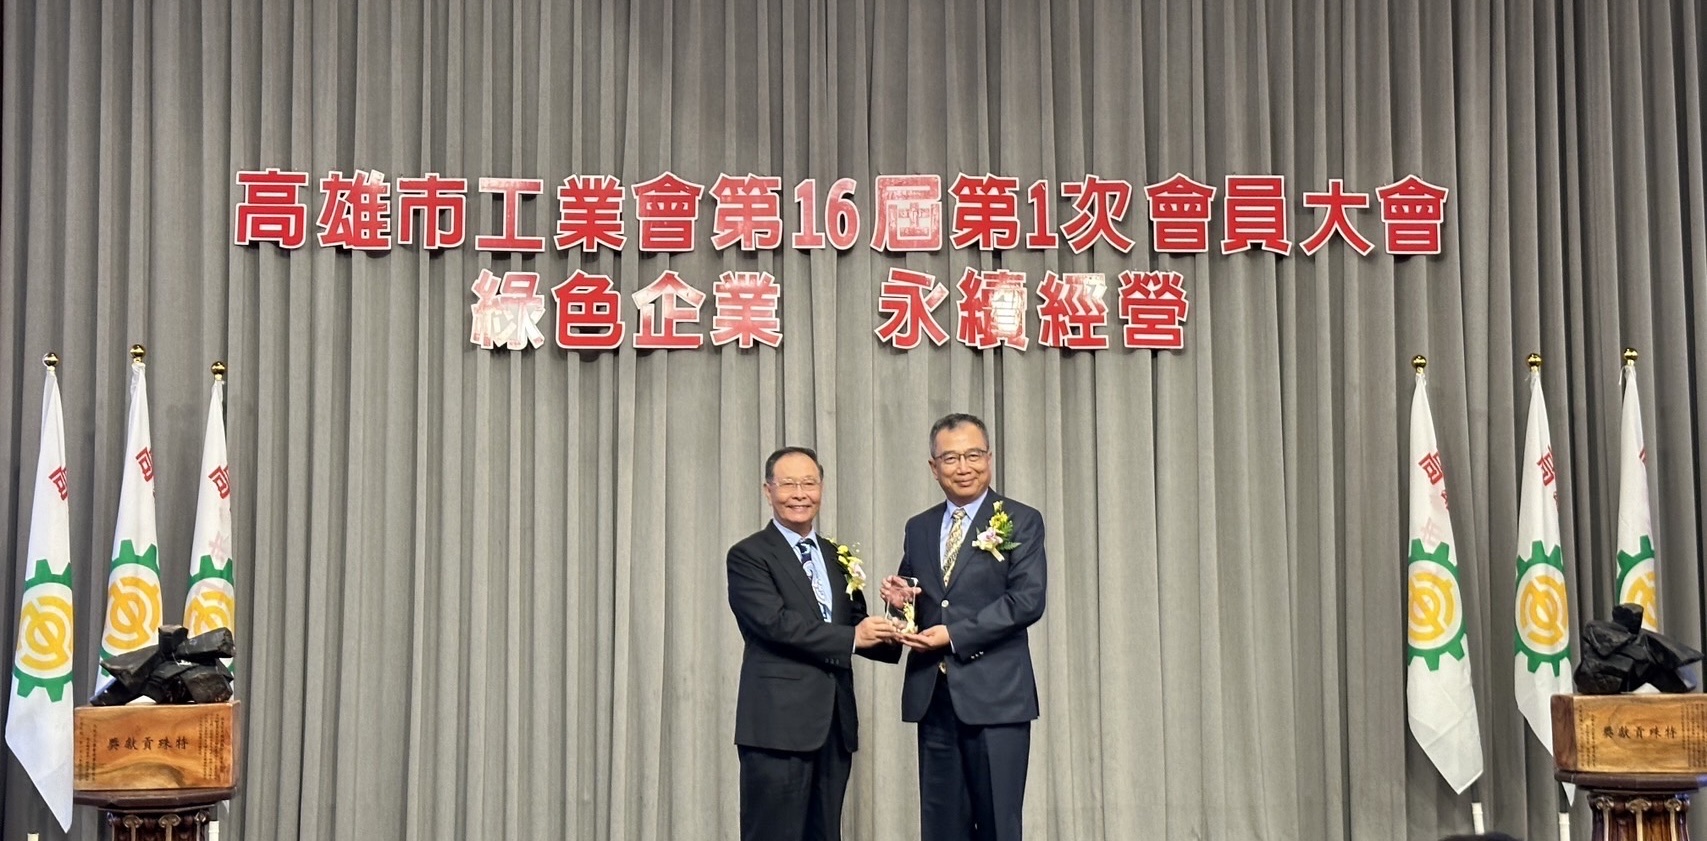 中機榮獲113年度高雄市工業會『榮譽會員獎』 殊榮